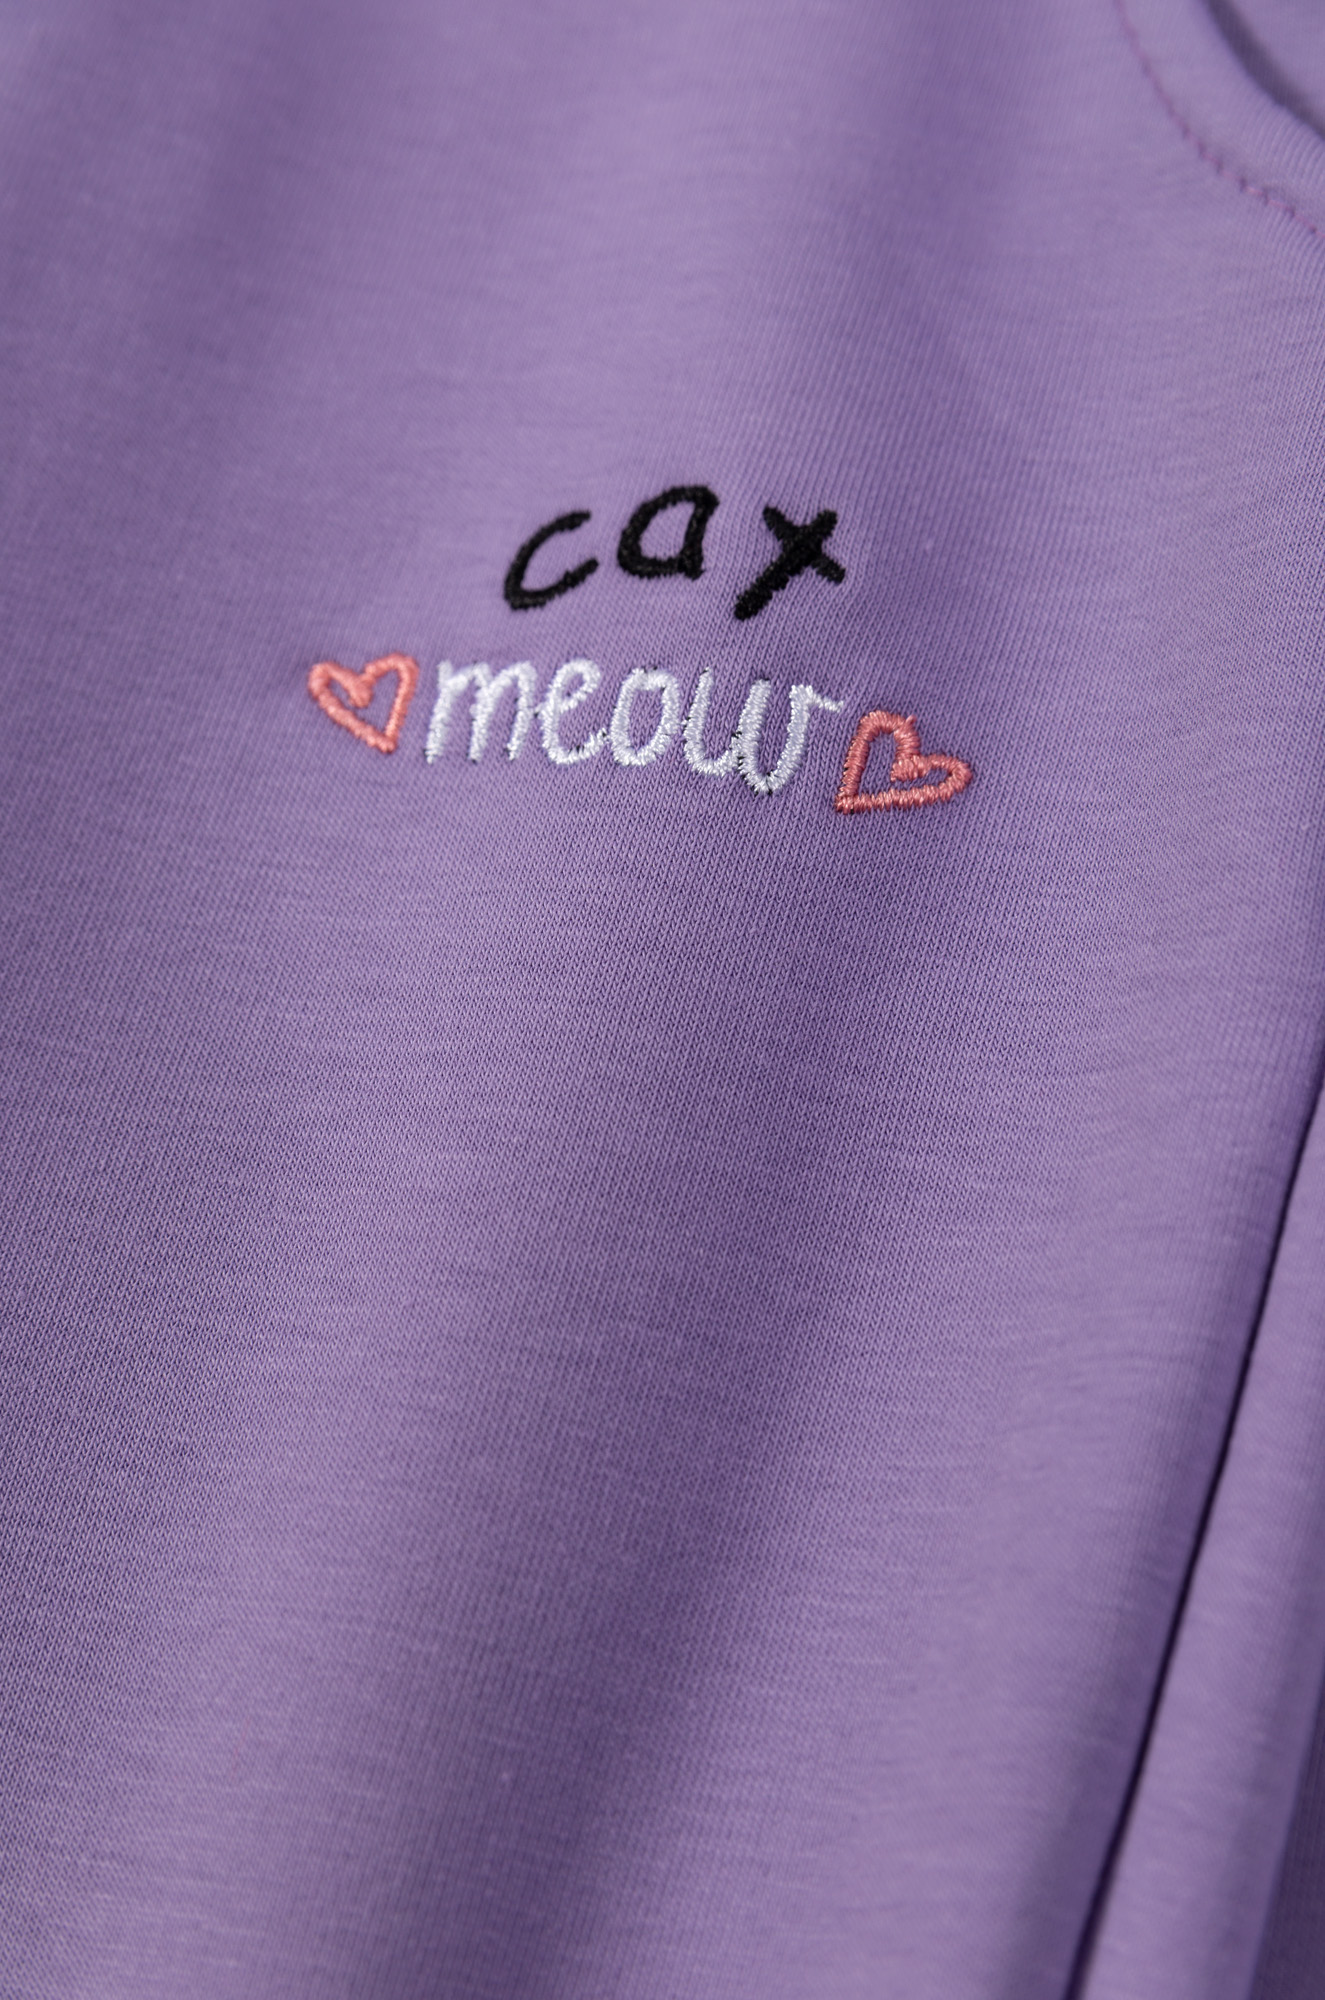 Штаны для девочек "Cat meaw lilac"